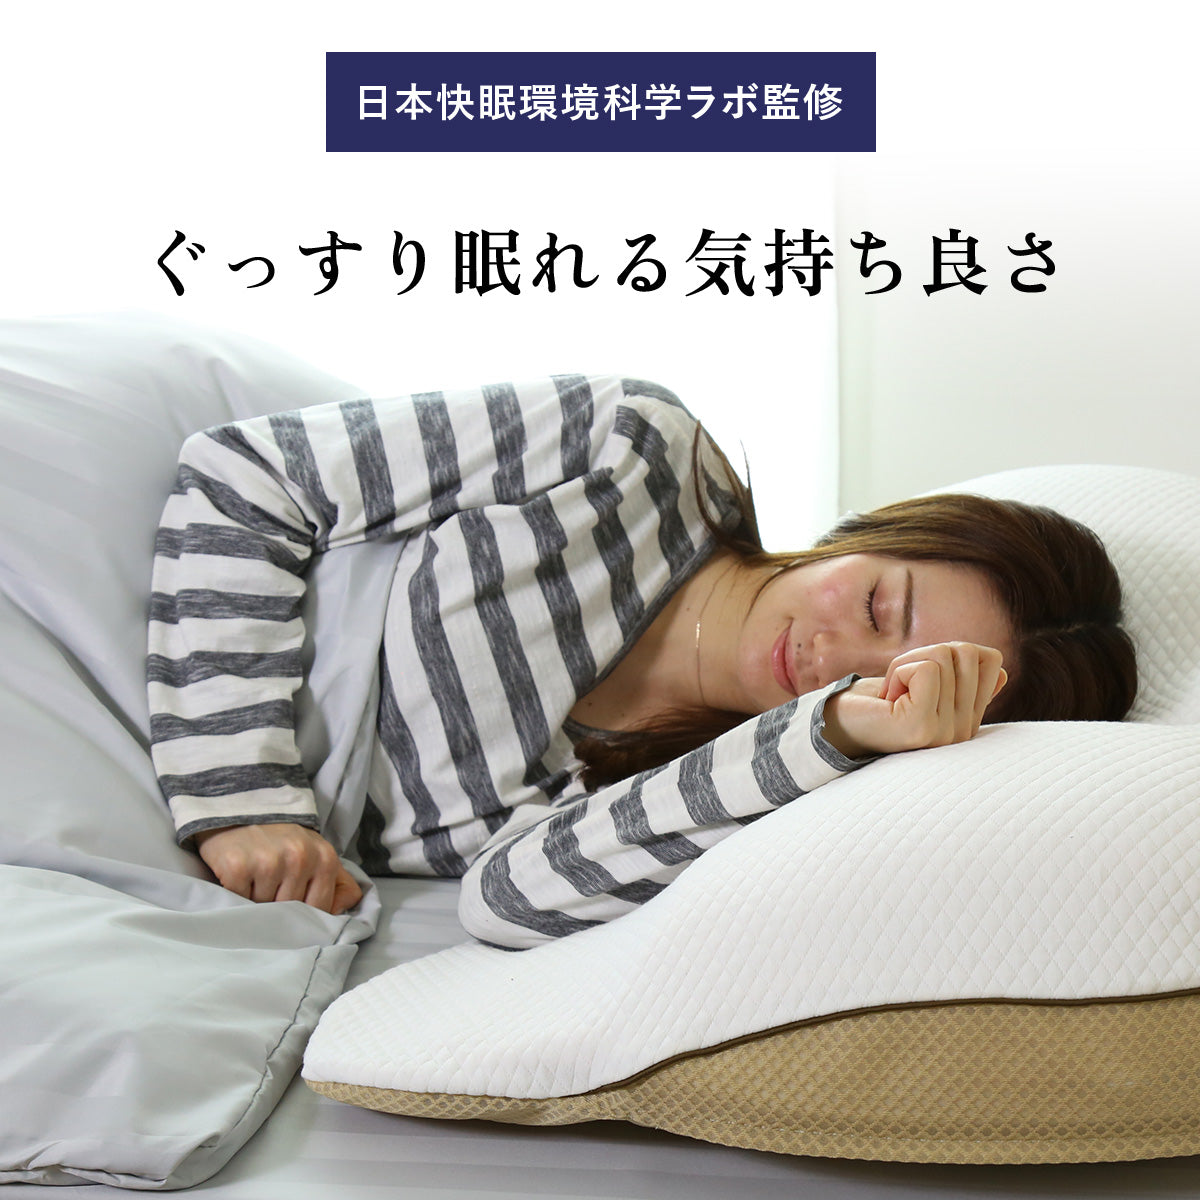 ギガ枕 昭和西川 新品未使用 ギガシリーズ セット 毛布 - 寝具